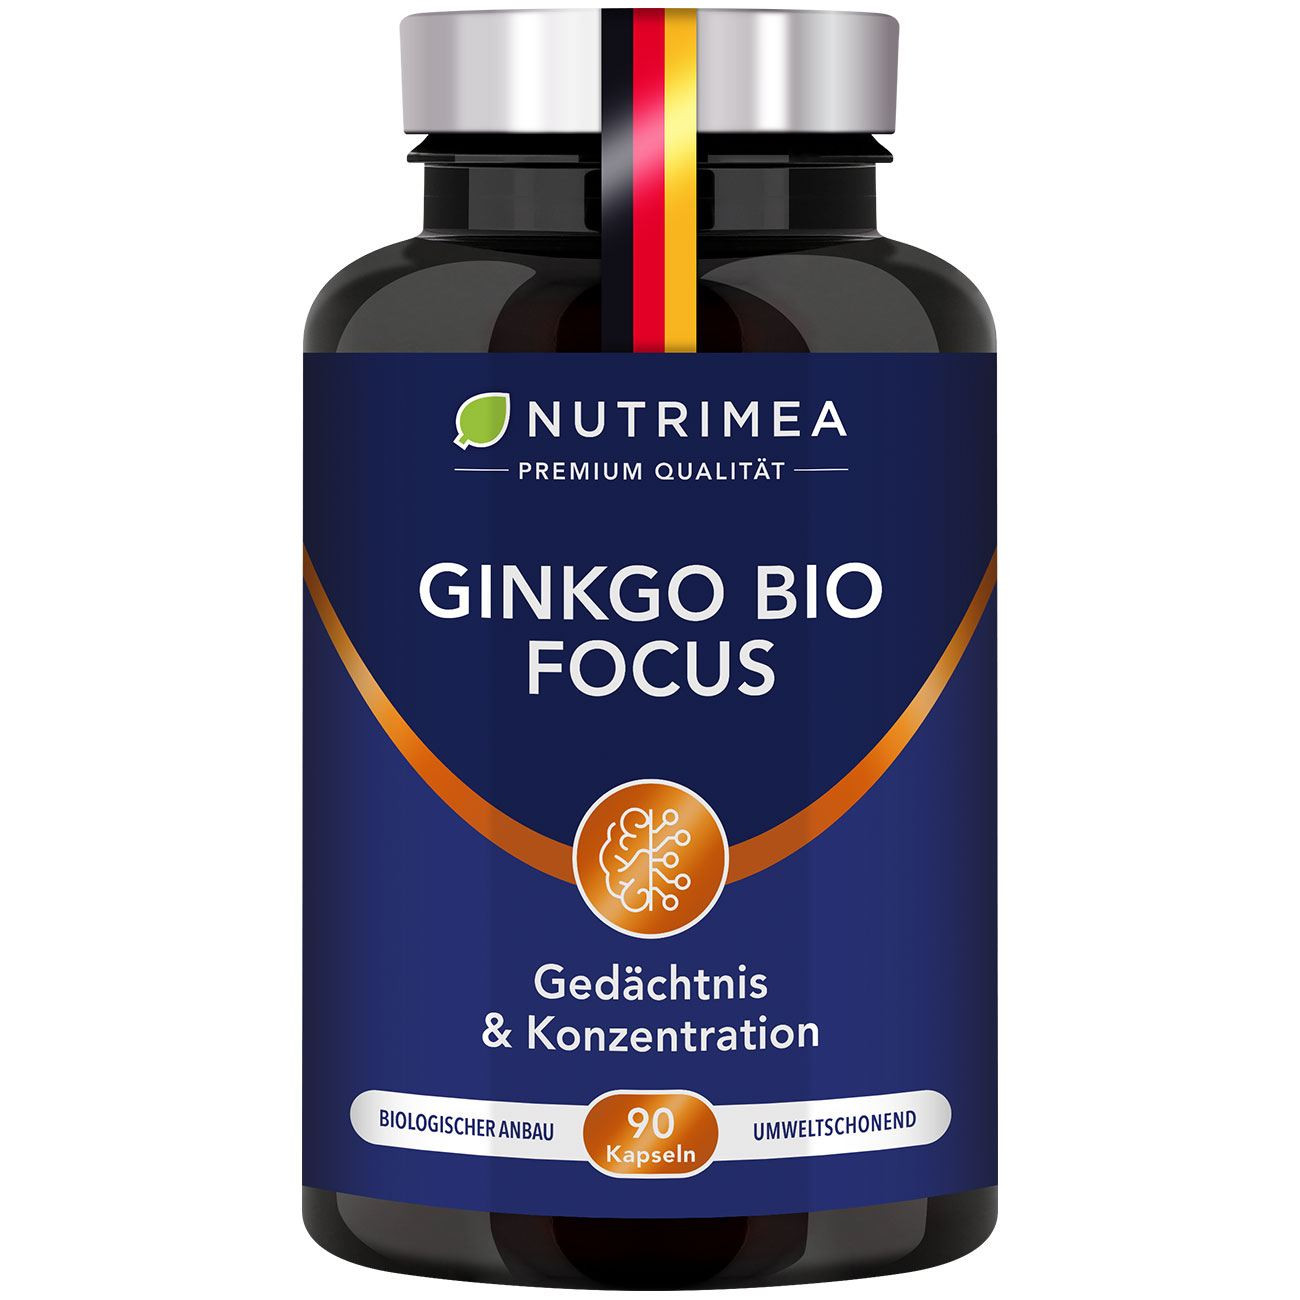 Foto des Nahrungsergänzungsmittels Ginkgo Bio Focus